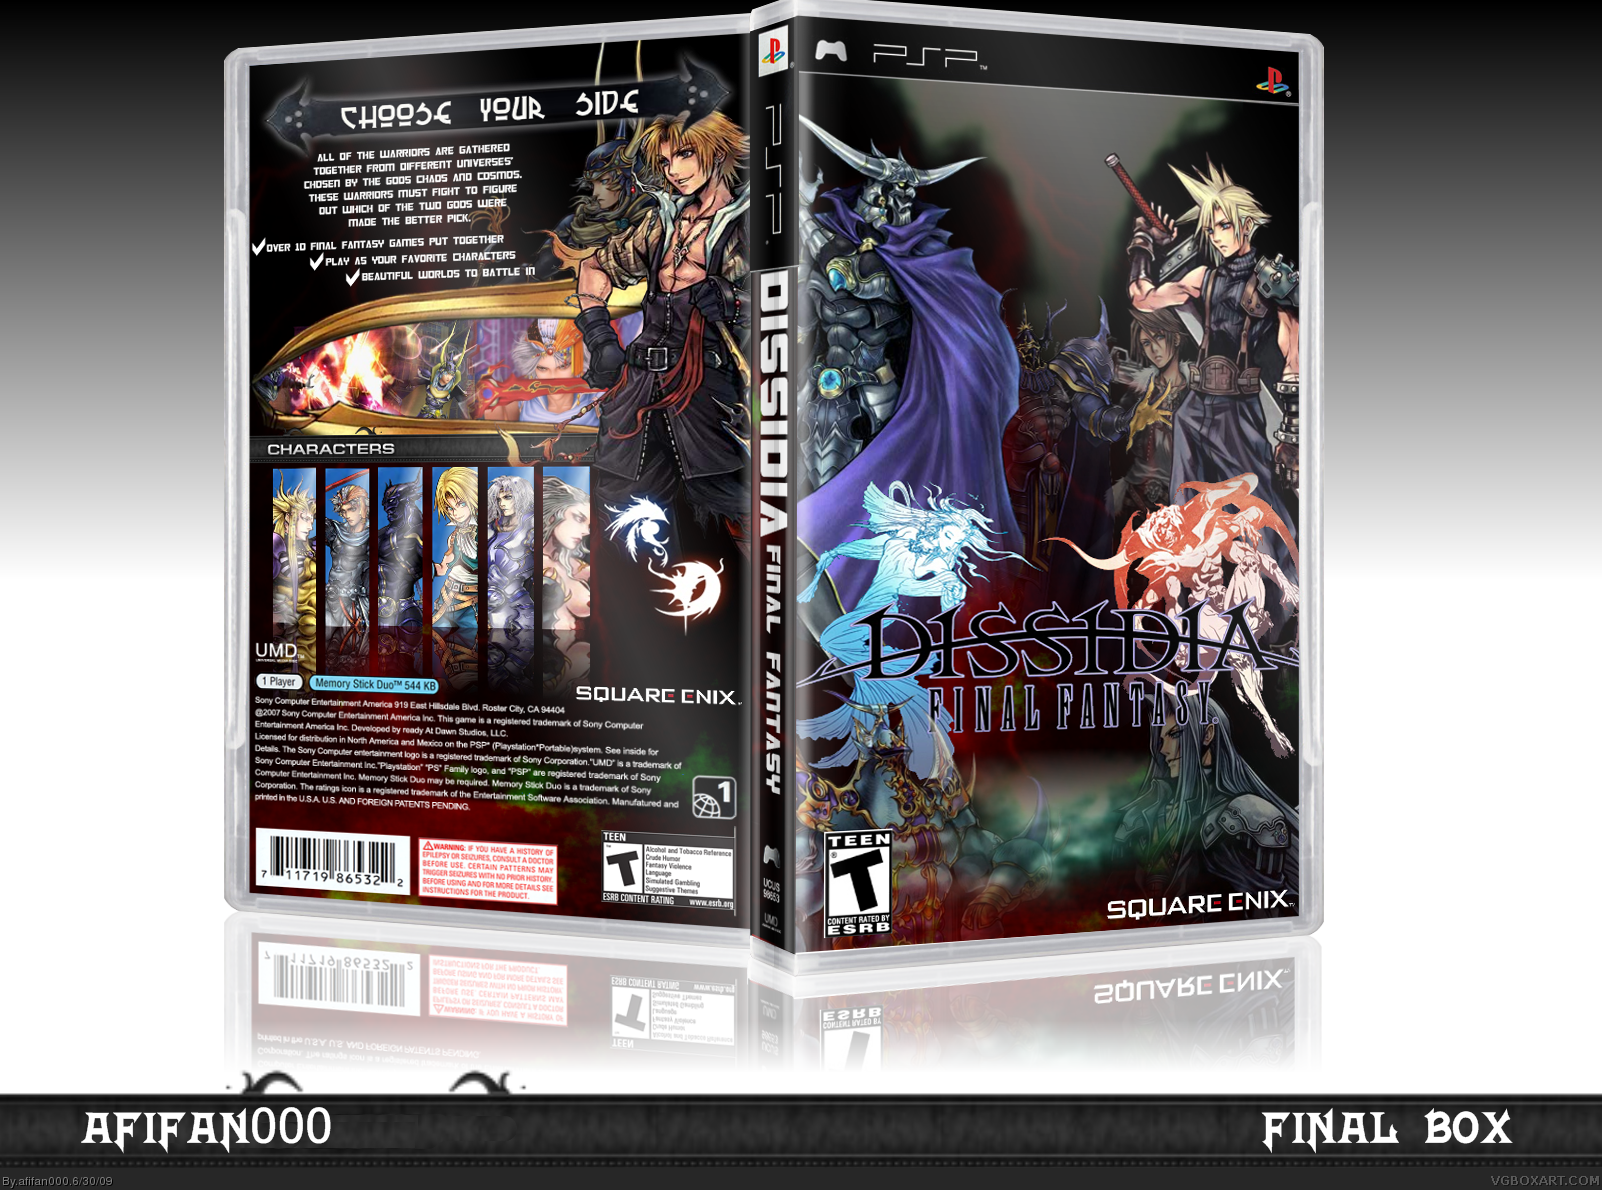 Dissida: Final Fantasy box cover